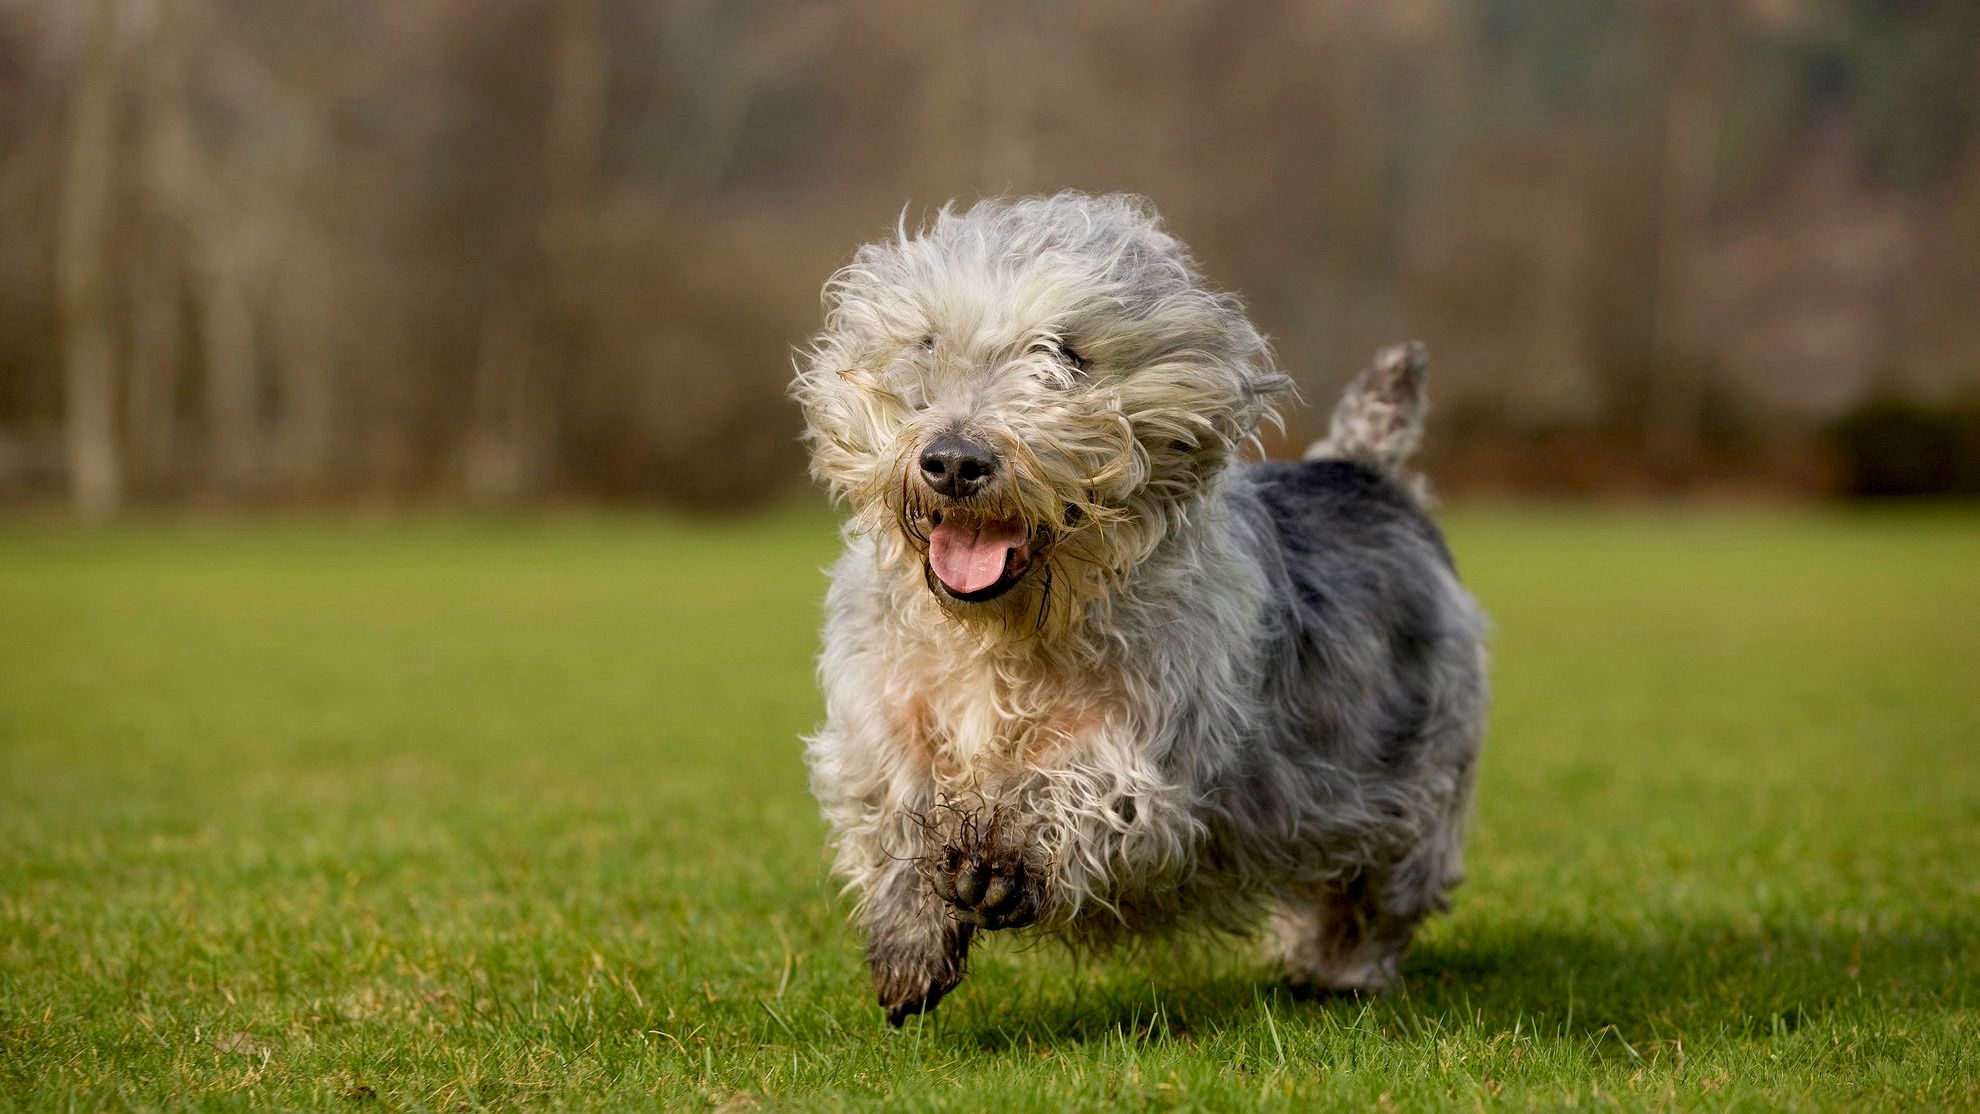 Glen Of Imaal Terrier bounding over grass